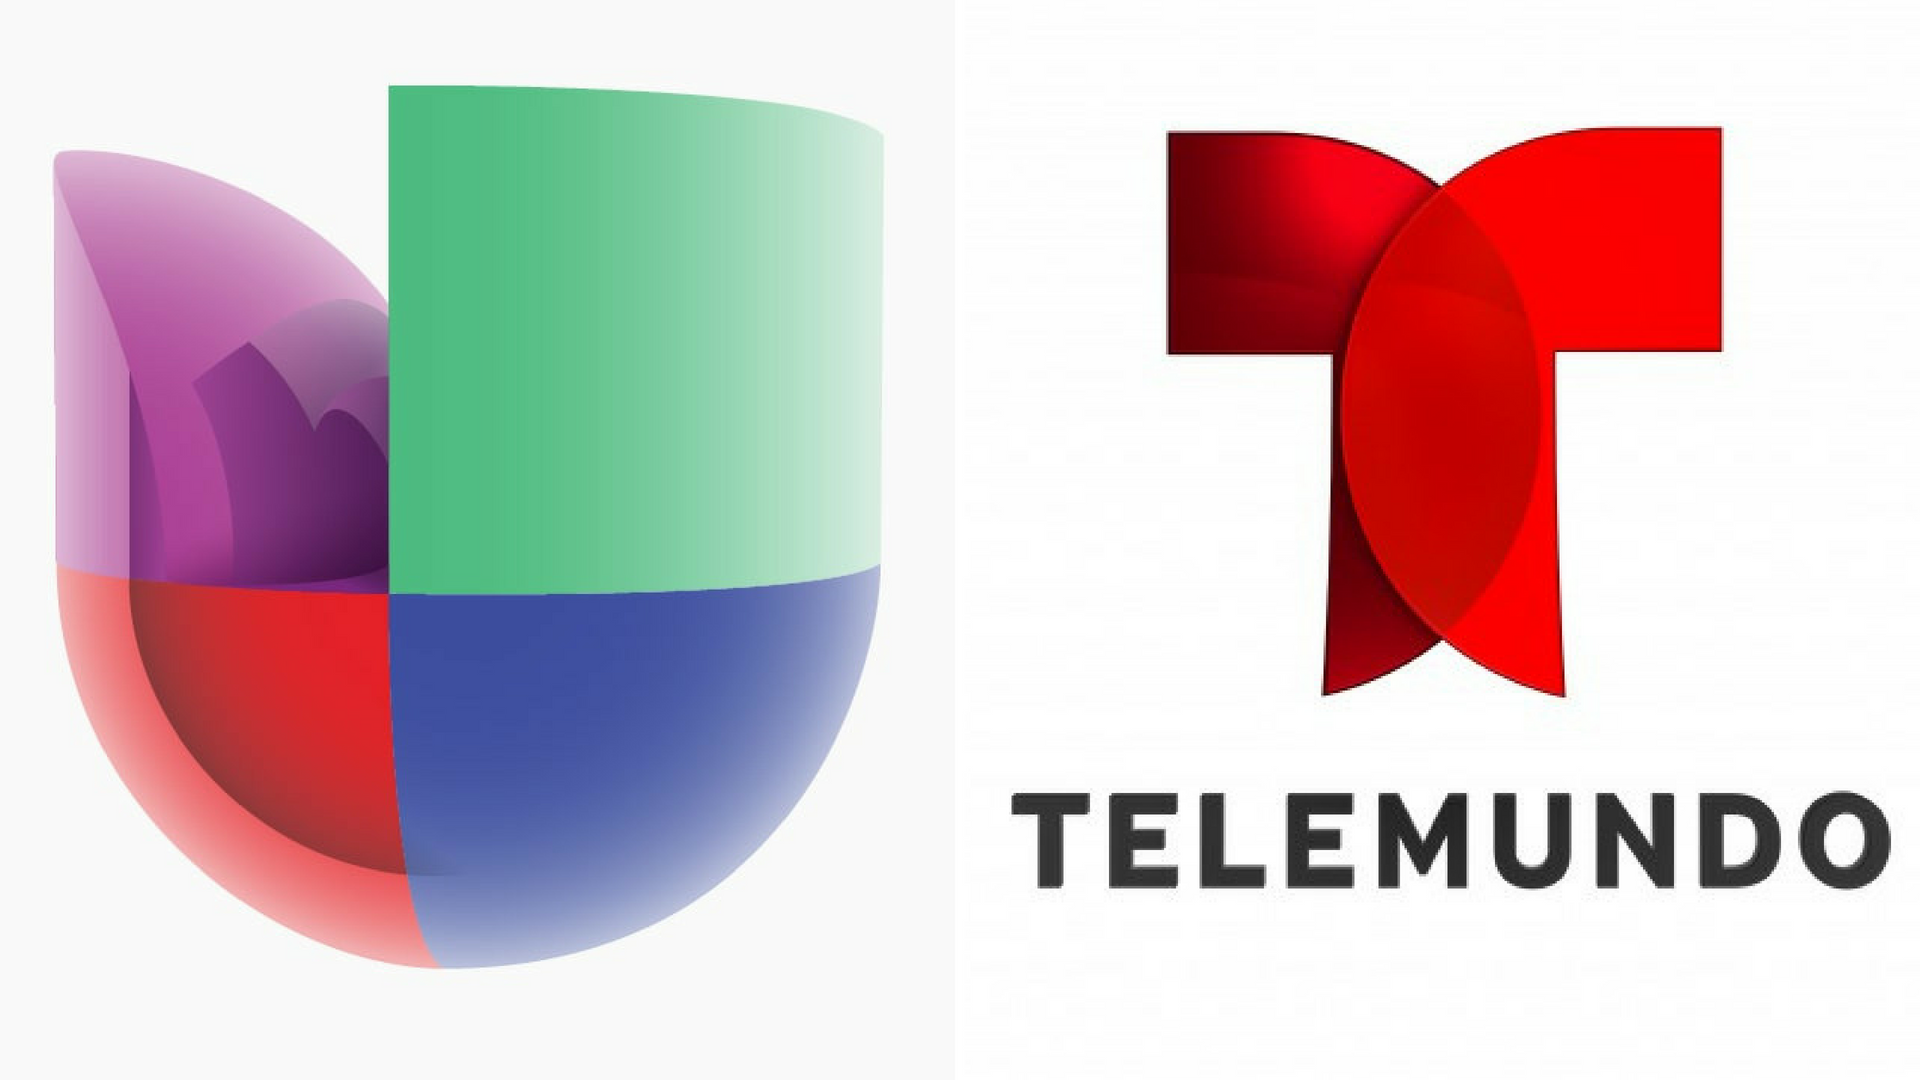 Univision and Telemundo